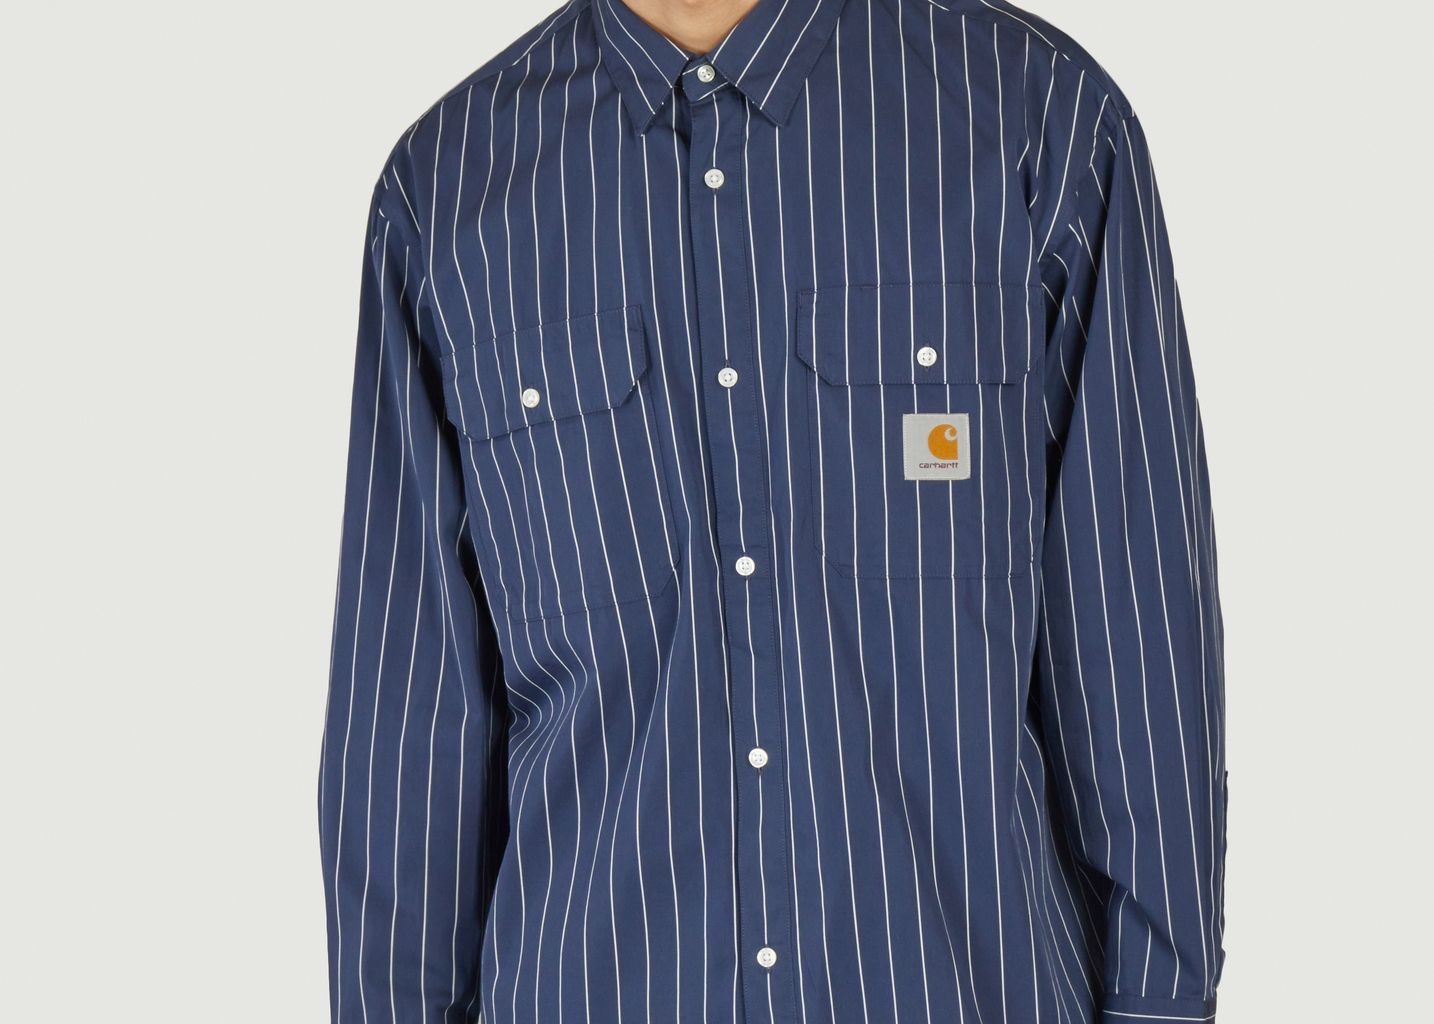 Orlean Shirt - Carhartt WIP